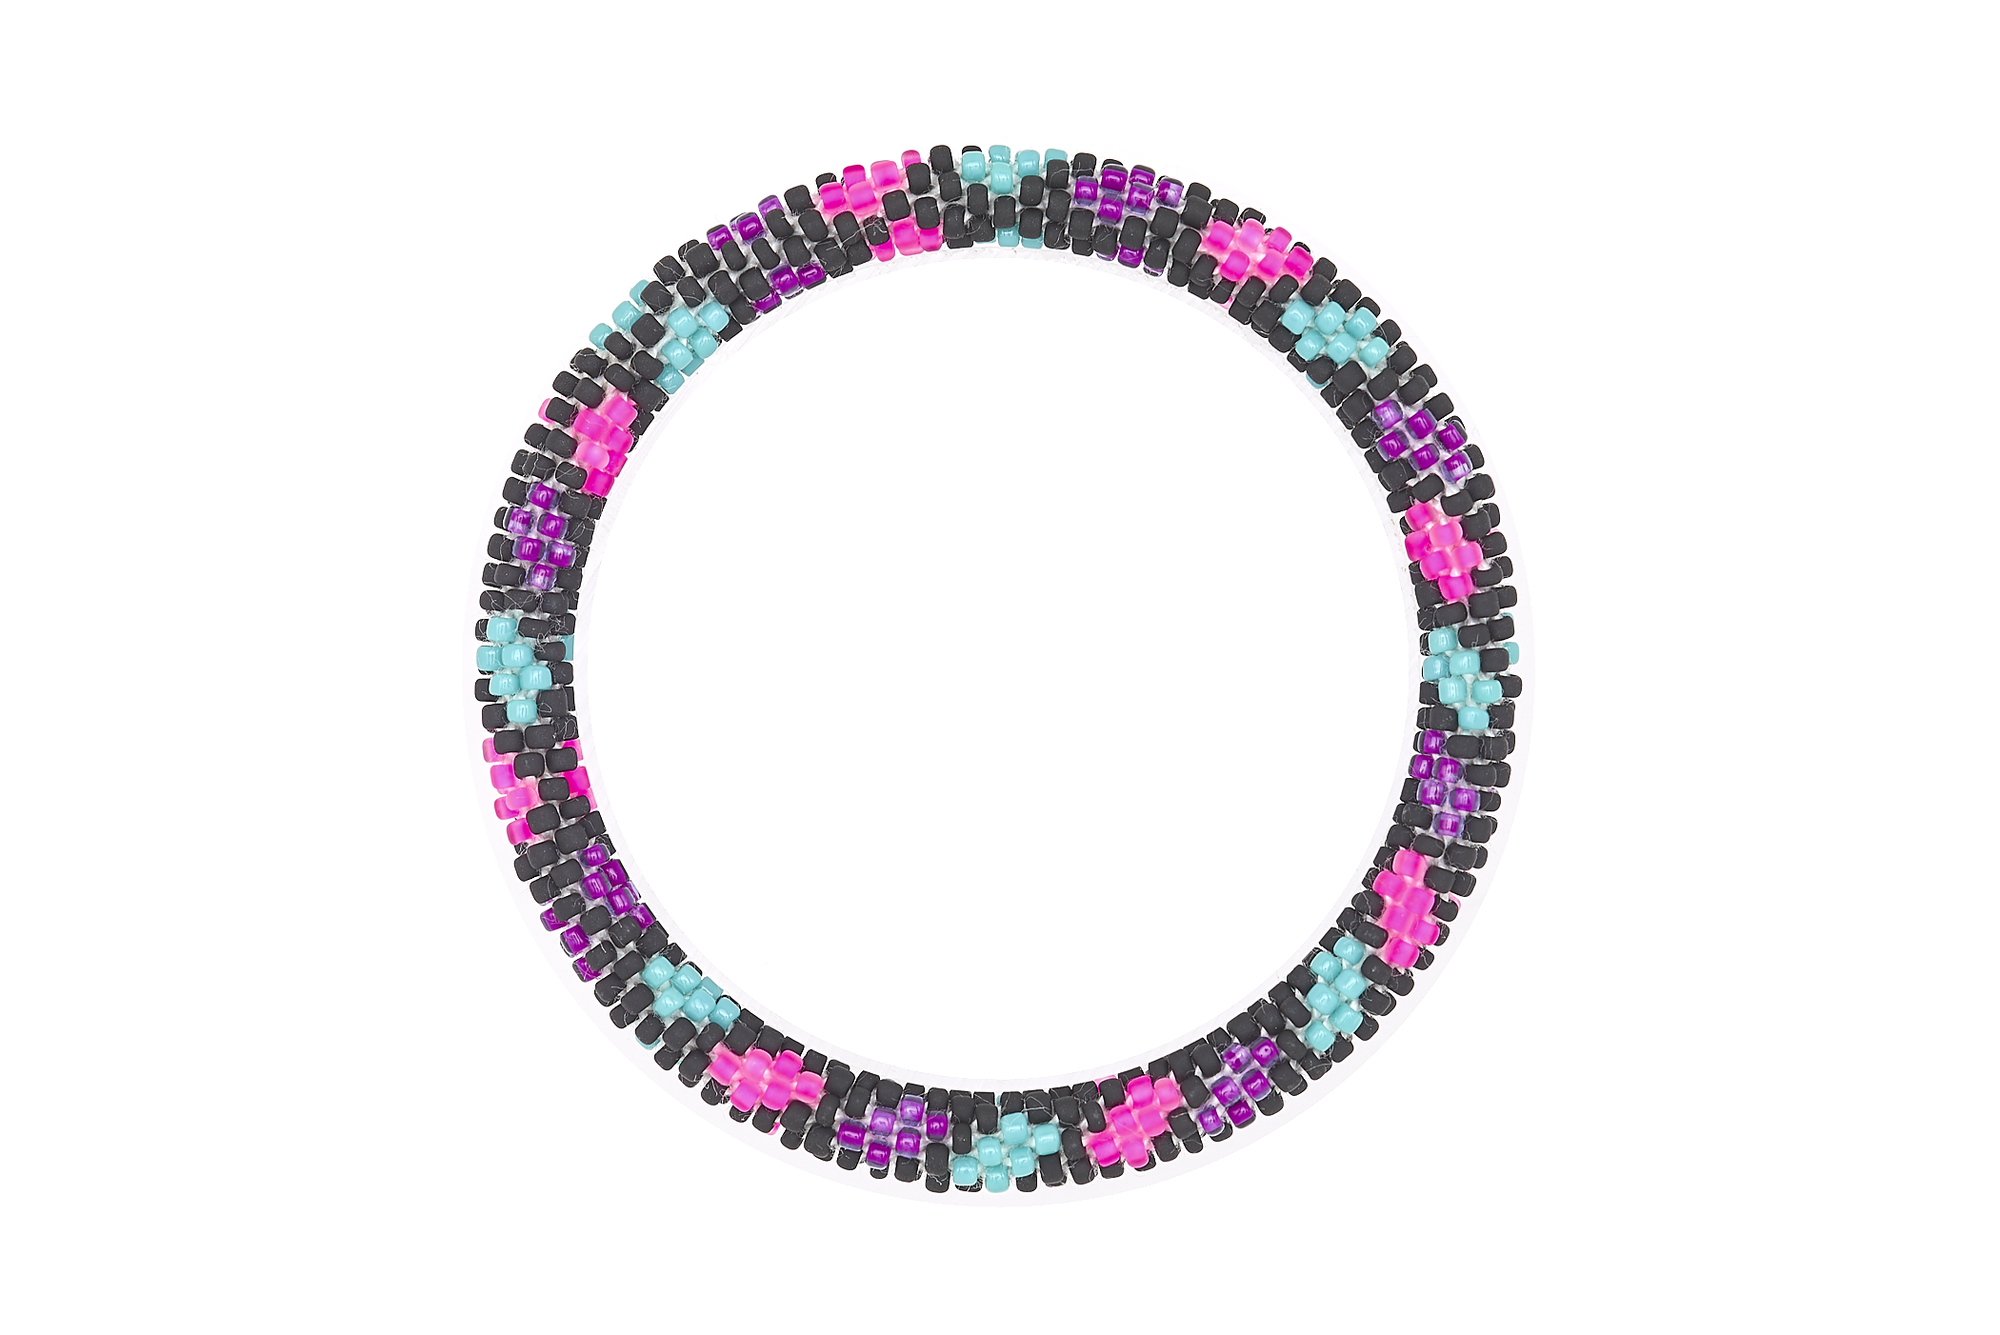 Sashka Co. Extended 8" Bracelet Matte Black / Matte Pink / Purple / Turquoise Rebel Girl Bracelet - Extended 8"